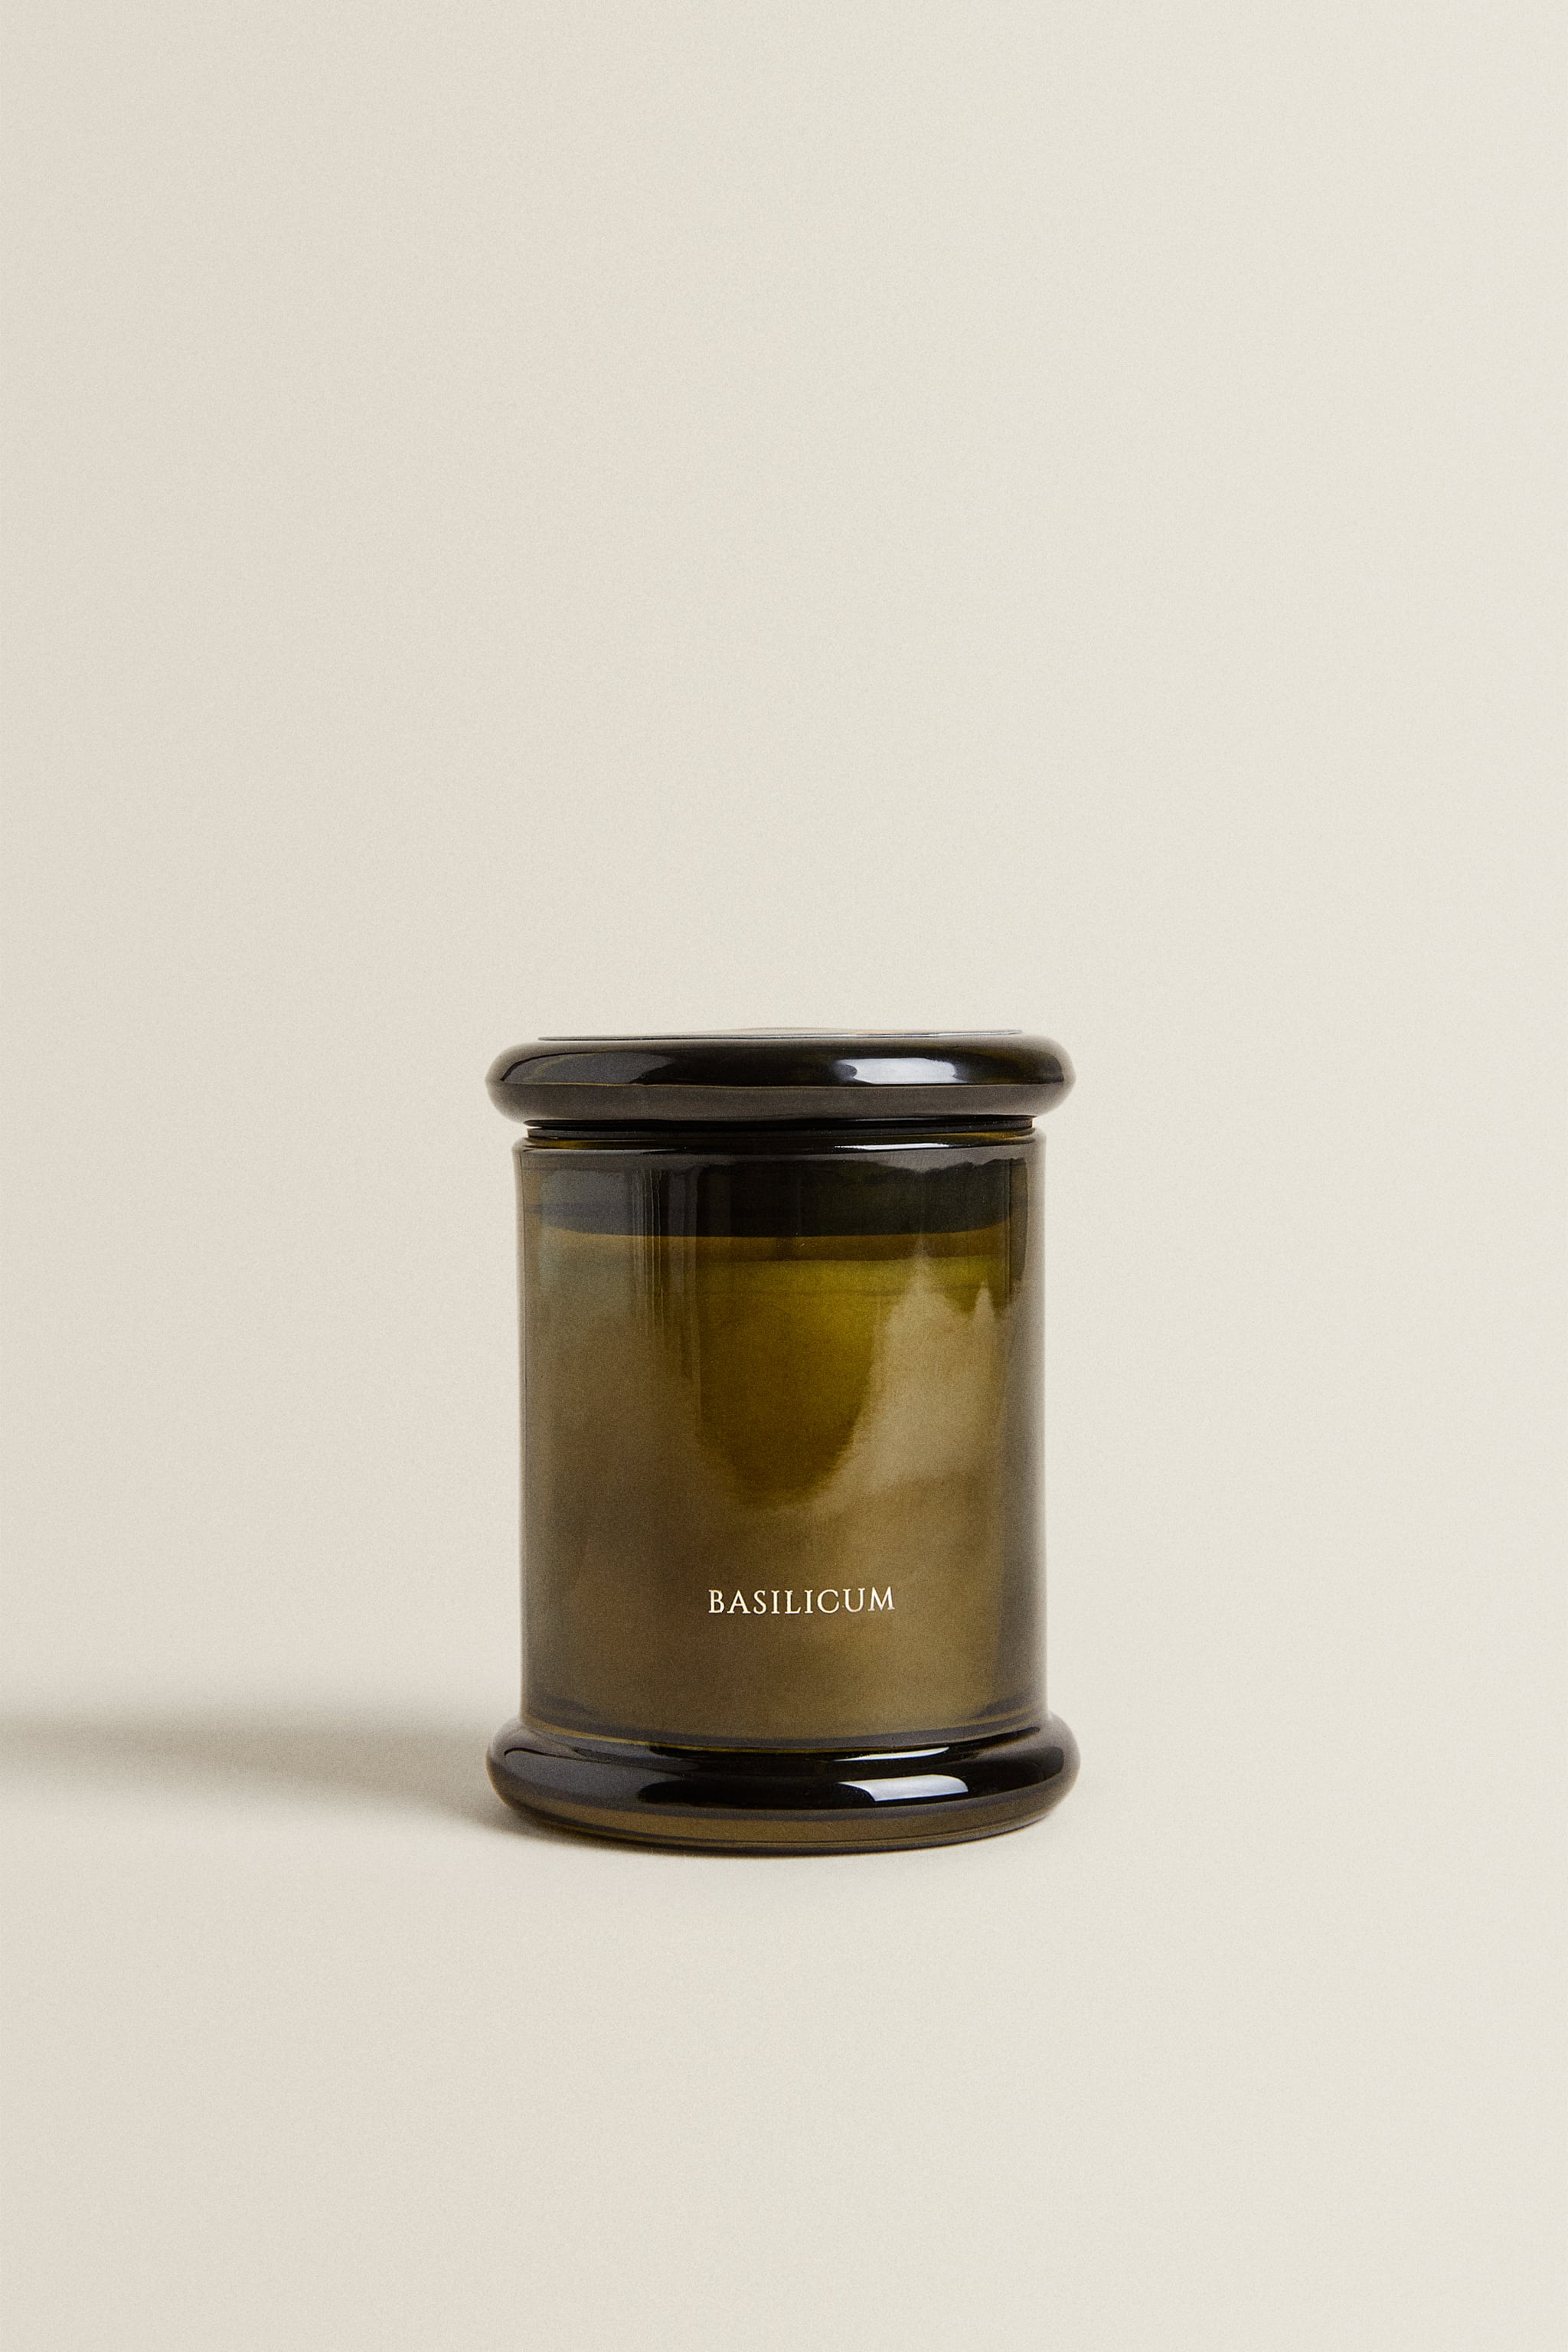 (150 г) ароматическая свеча базиликум Zara, монетный двор шоколад темный монетный двор золотой стандарт слиток 80 г